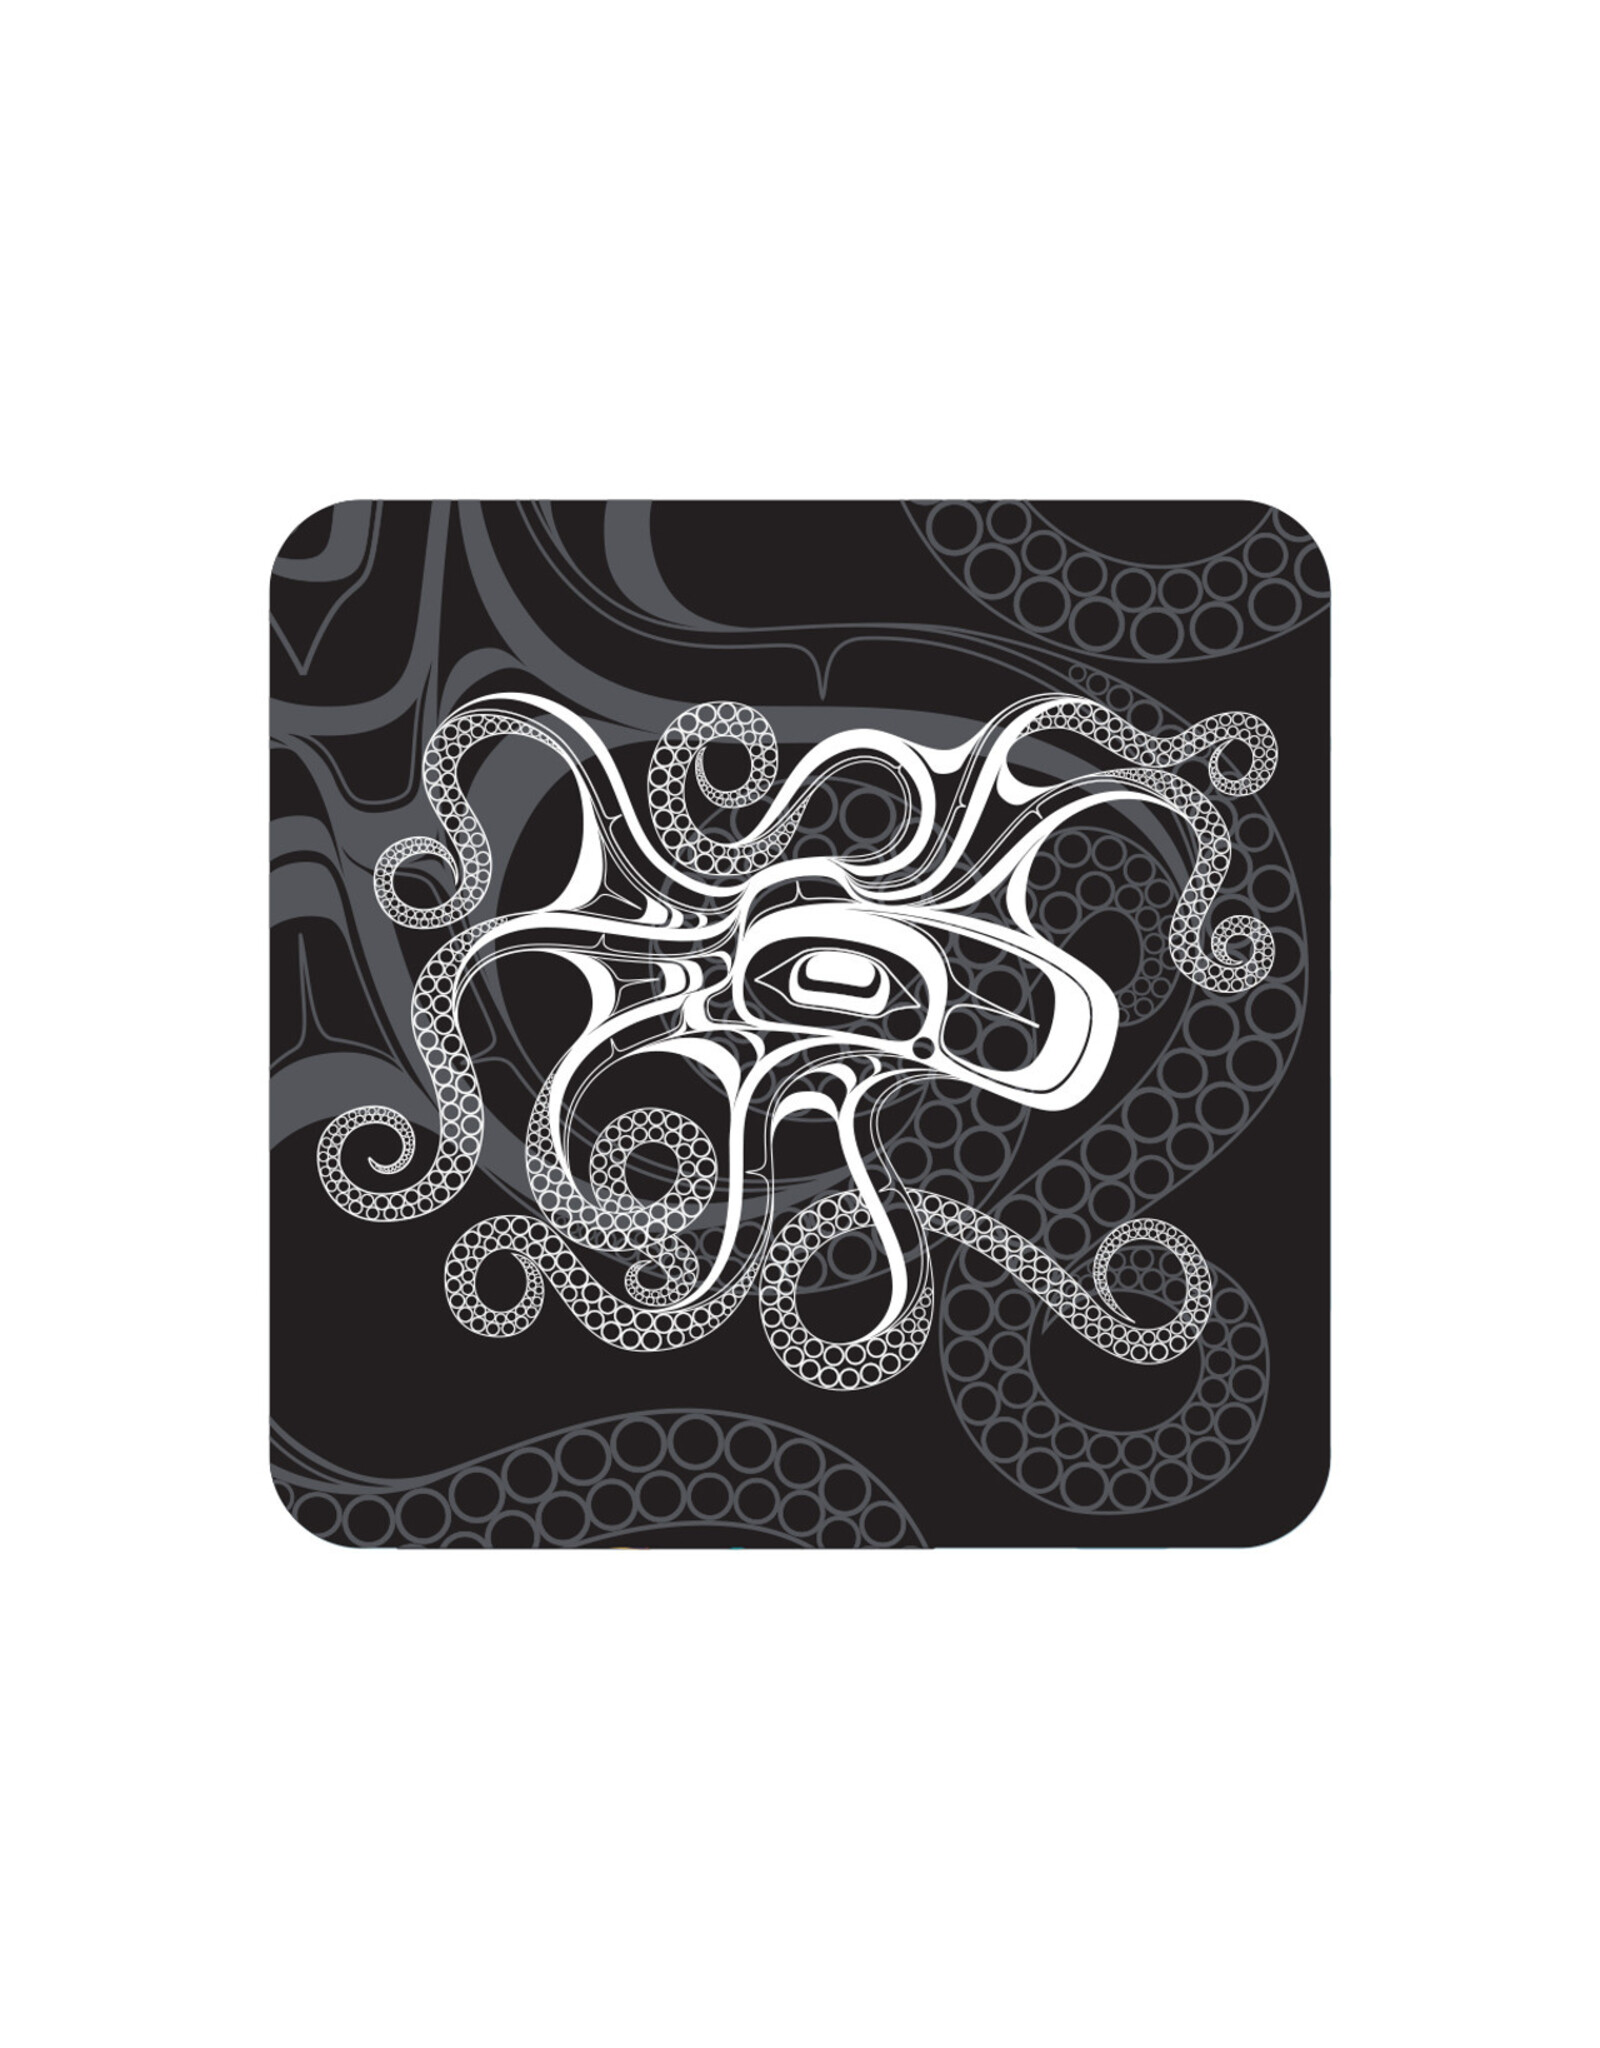 Sous-verre Octopus (Nuu)  par Earnest Swanson  (CBC27)